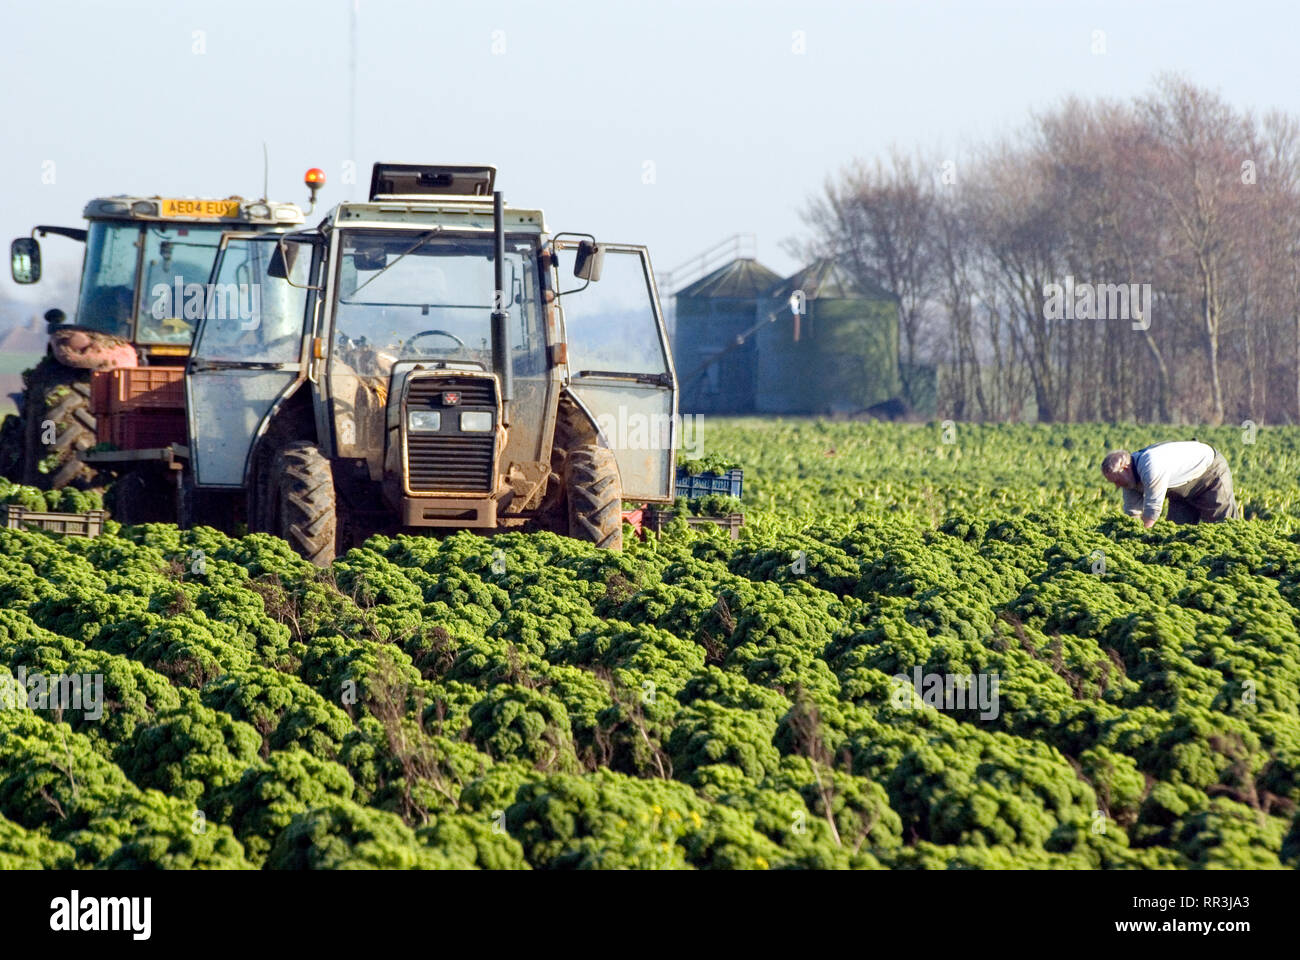 Harvesting Curly Kale, UK Stock Photo